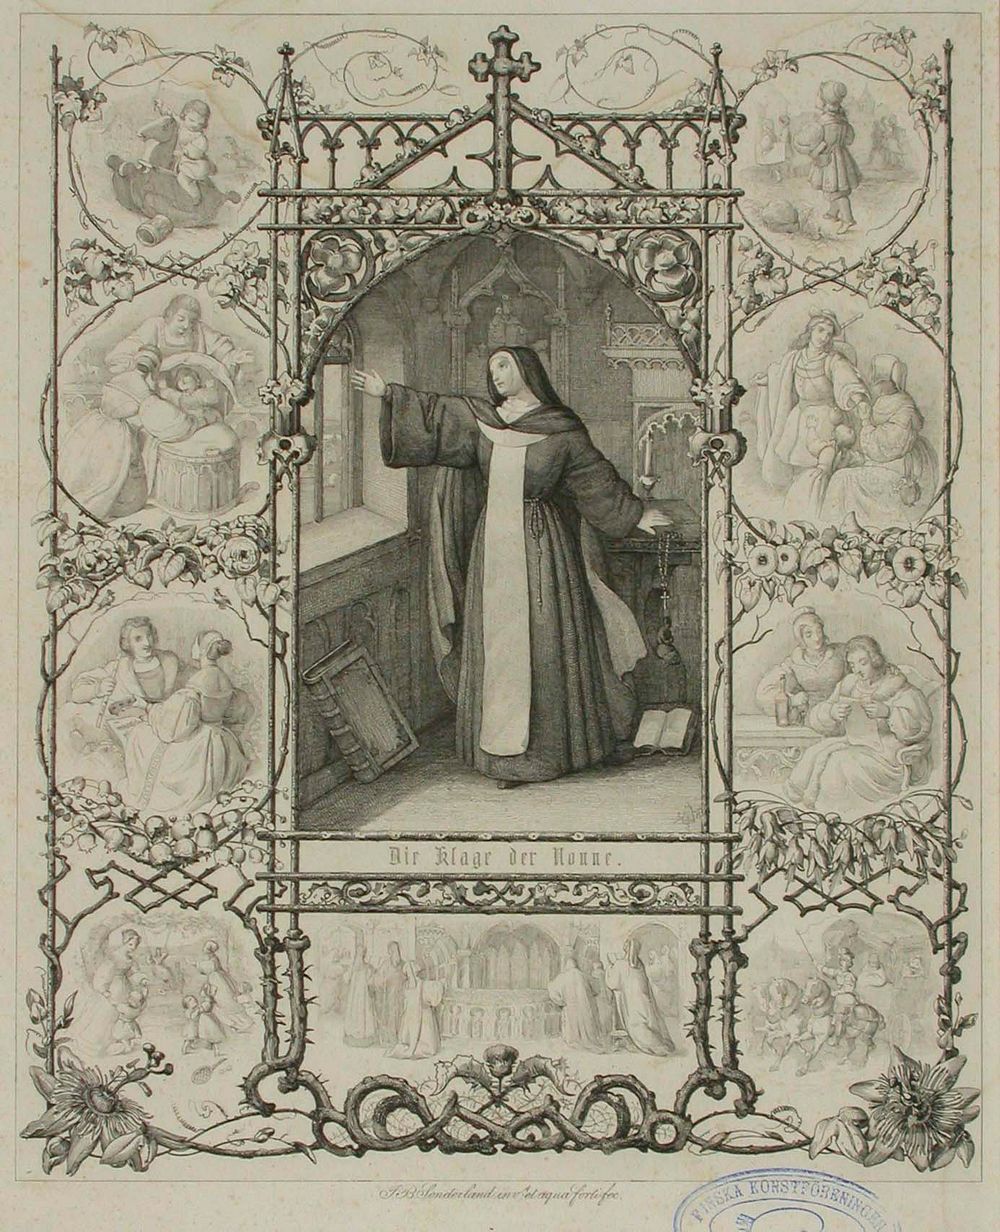 Runokuvitus, die klage der nonne, 1838 - 1844, Johann Baptist Sonderland